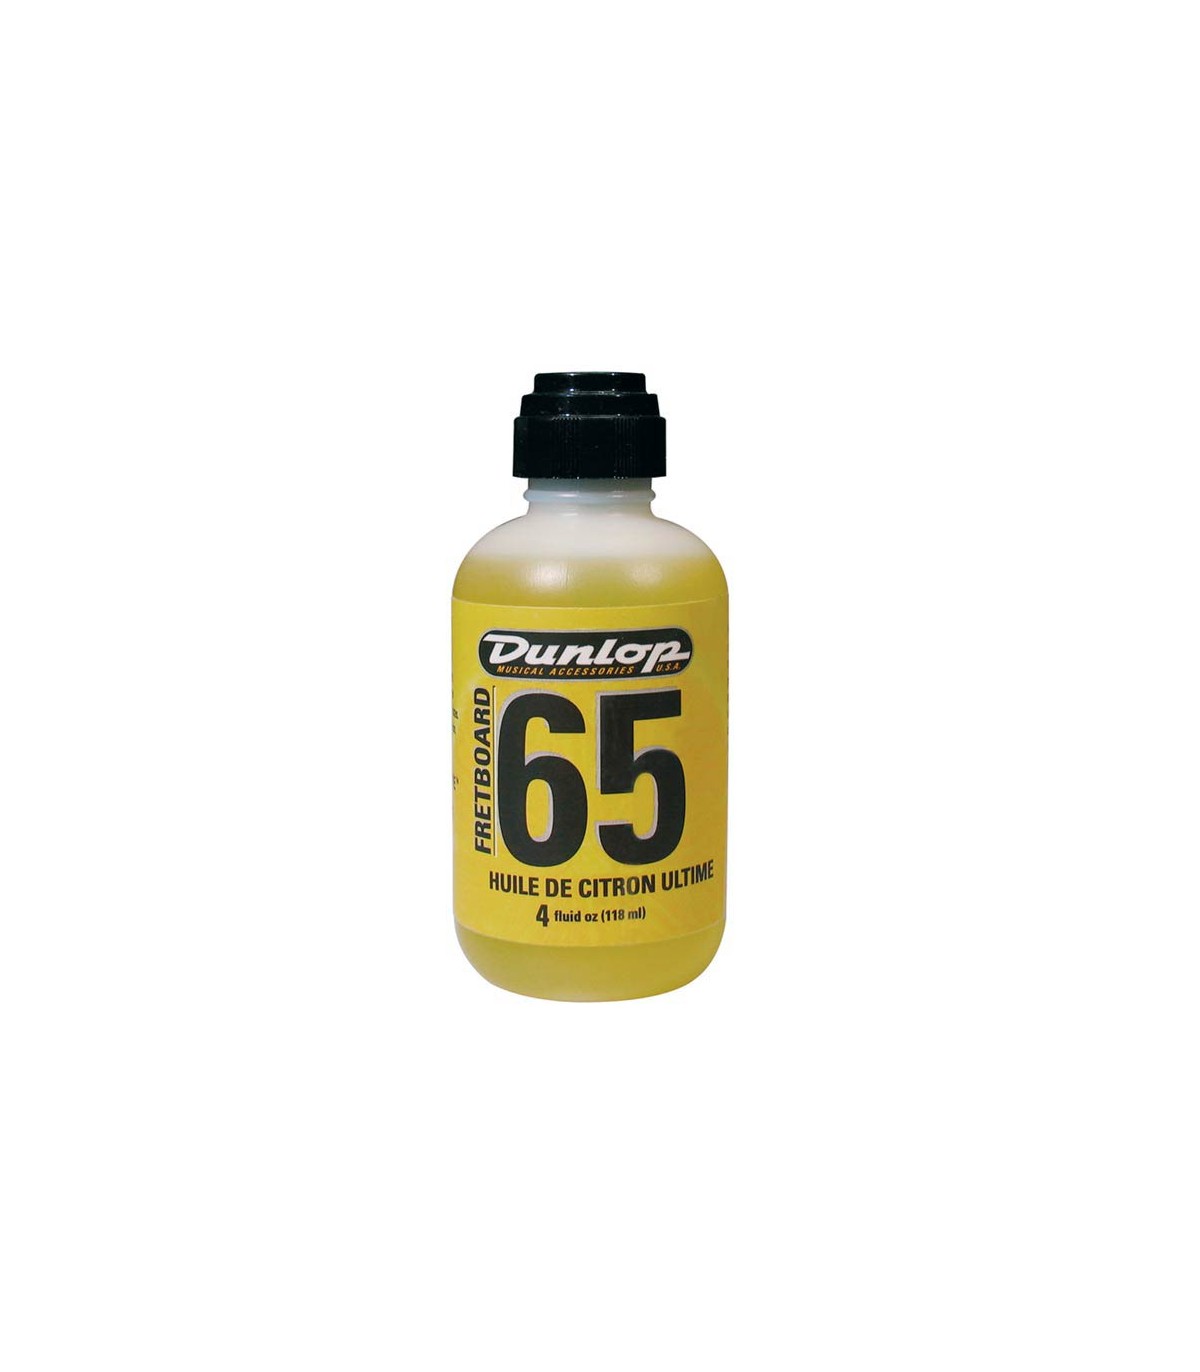 Dunlop lemon fretboard oil